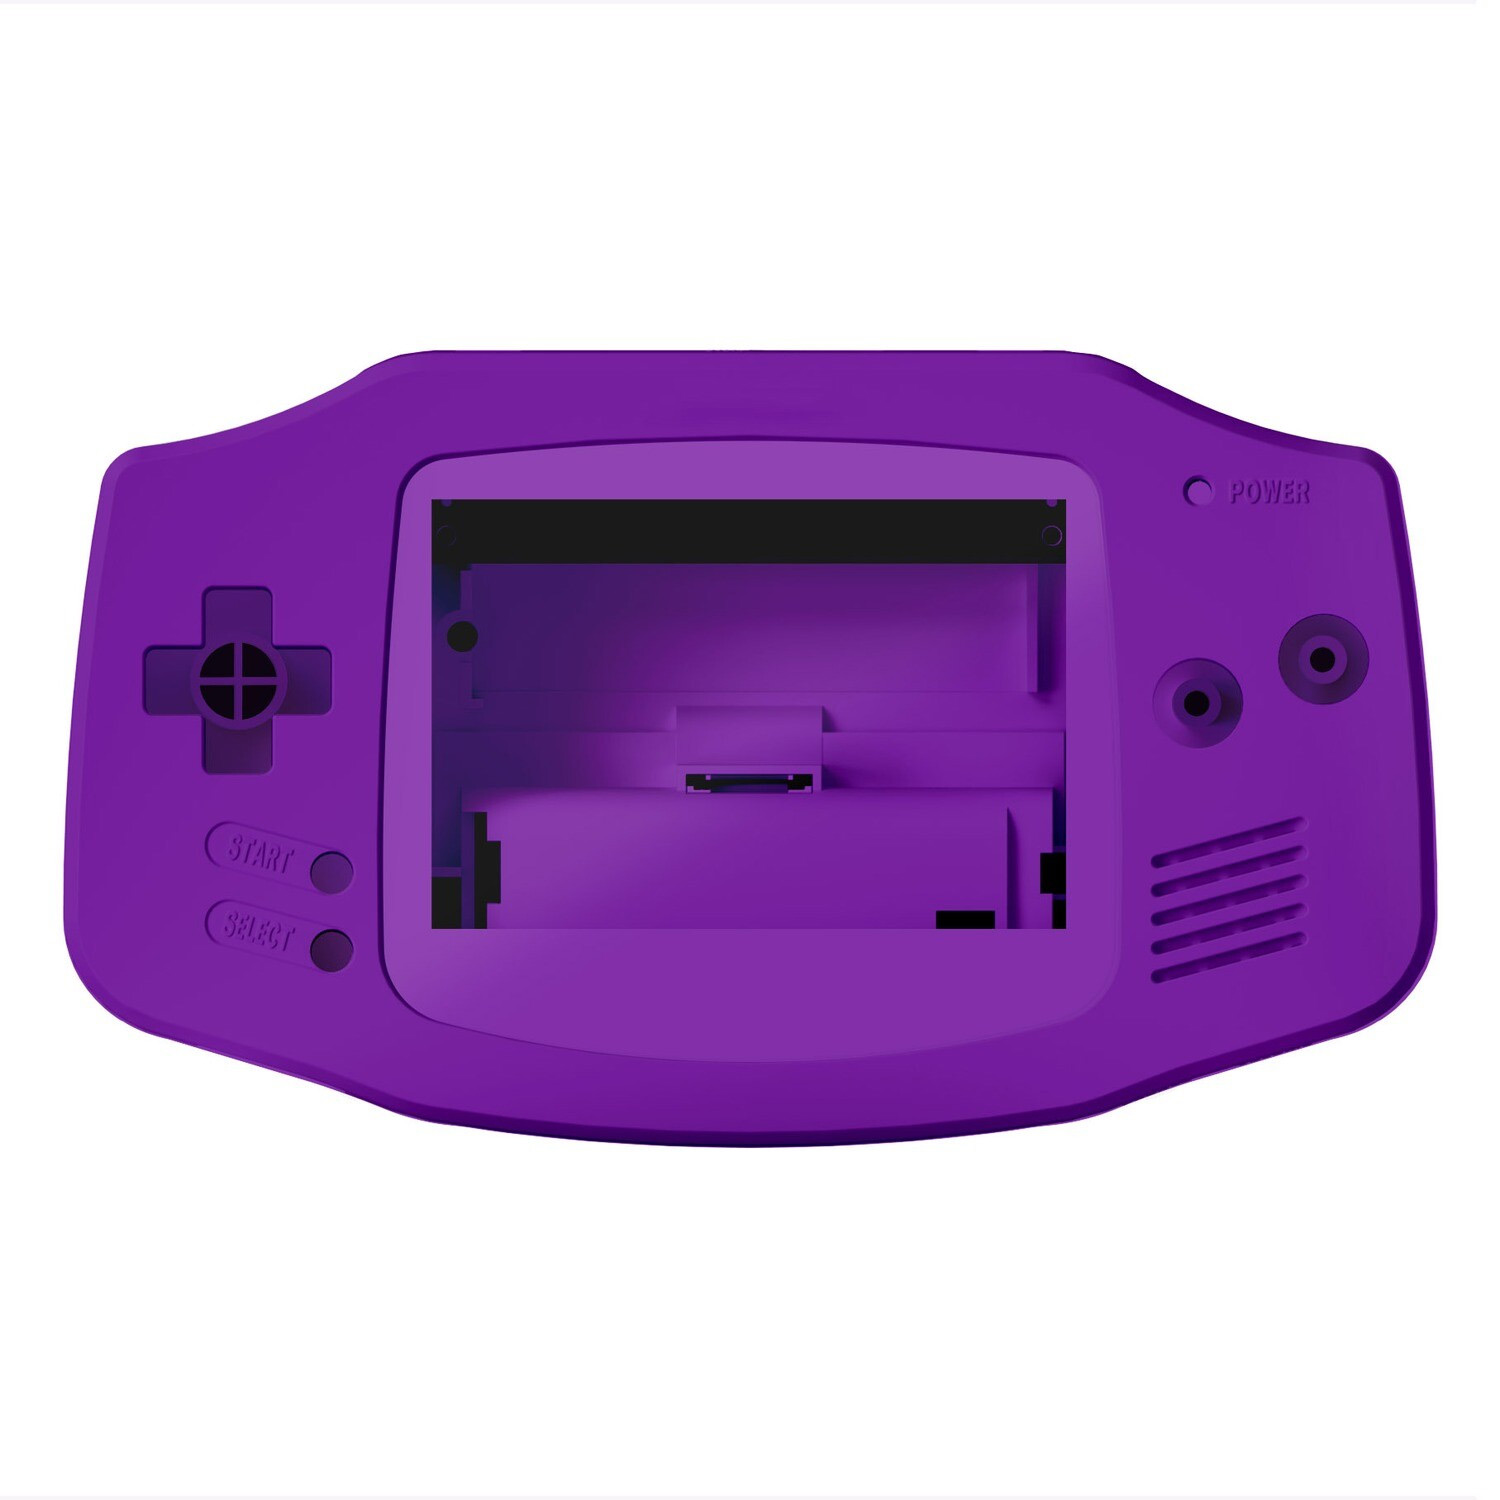 Game Boy Advance Gehäuse (Solid Purple)